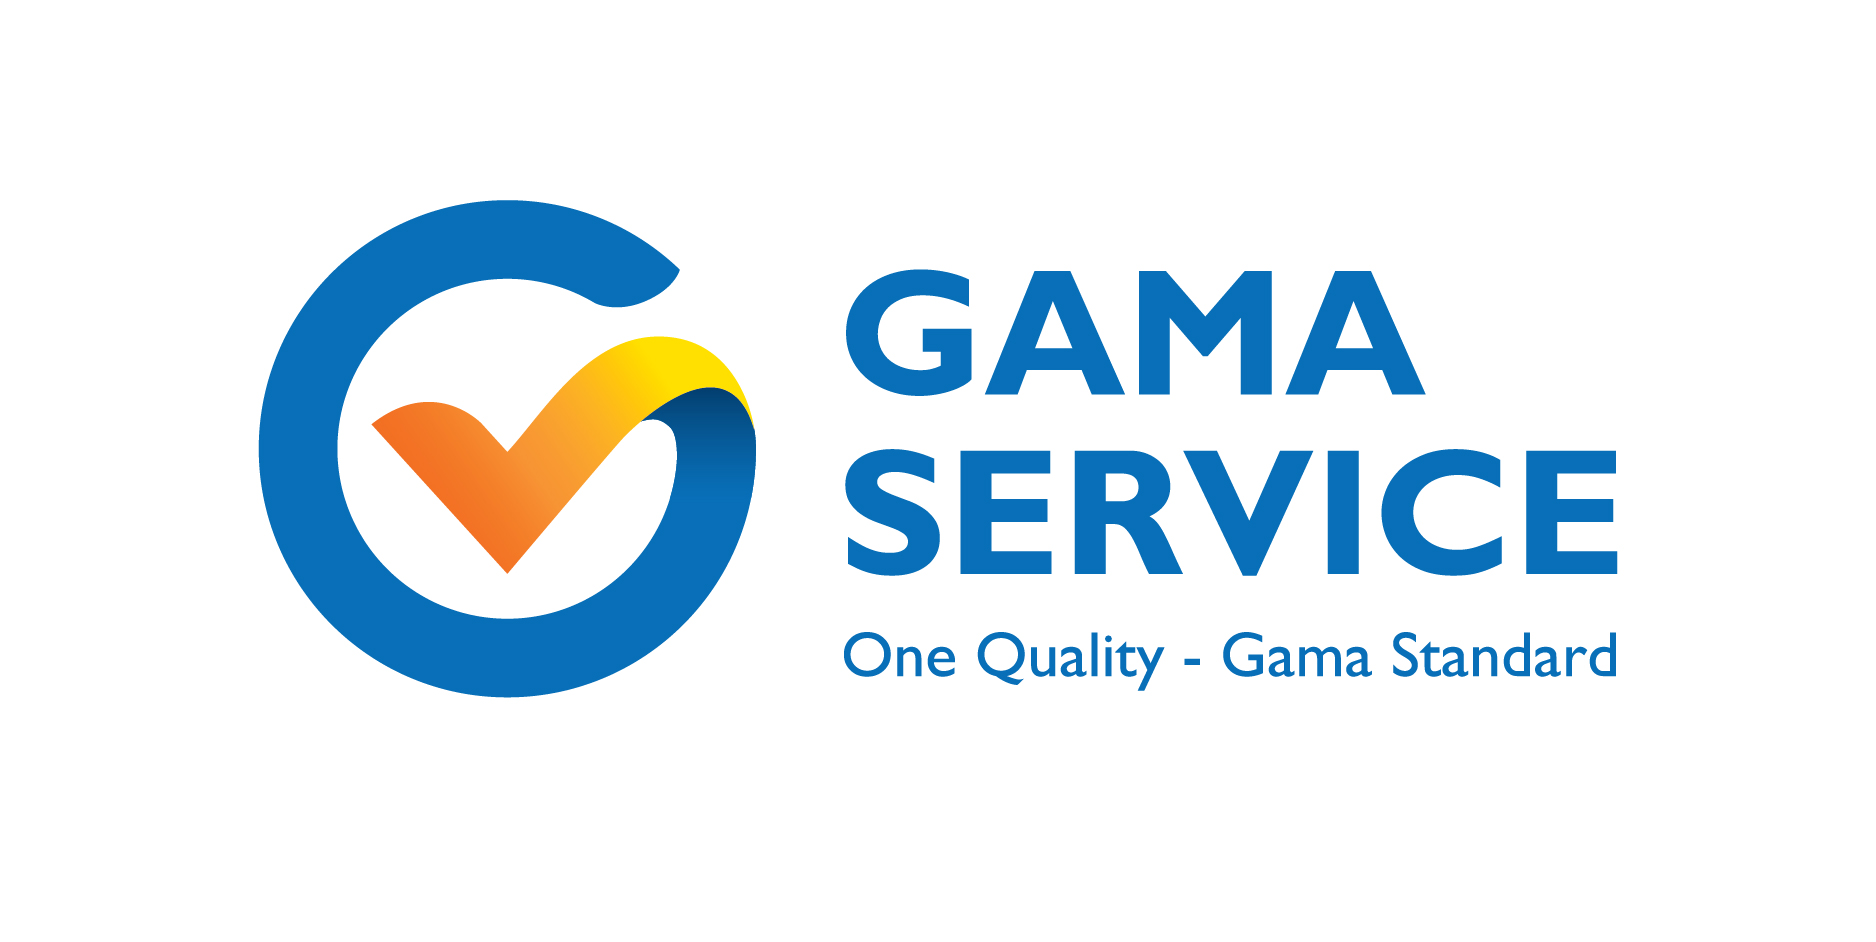 Gama Service - Dịch vụ thang máy cao cấp của GamaLift chính thức trở thành công ty dịch vụ thang máy đầu tiên trên thị trường Việt Nam. Với hệ thống mạng lưới phủ sóng tiến tới 40 trạm dịch vụ, nhân sự chính trực, chuyên nghiệp và tài nguyên công nghệ.